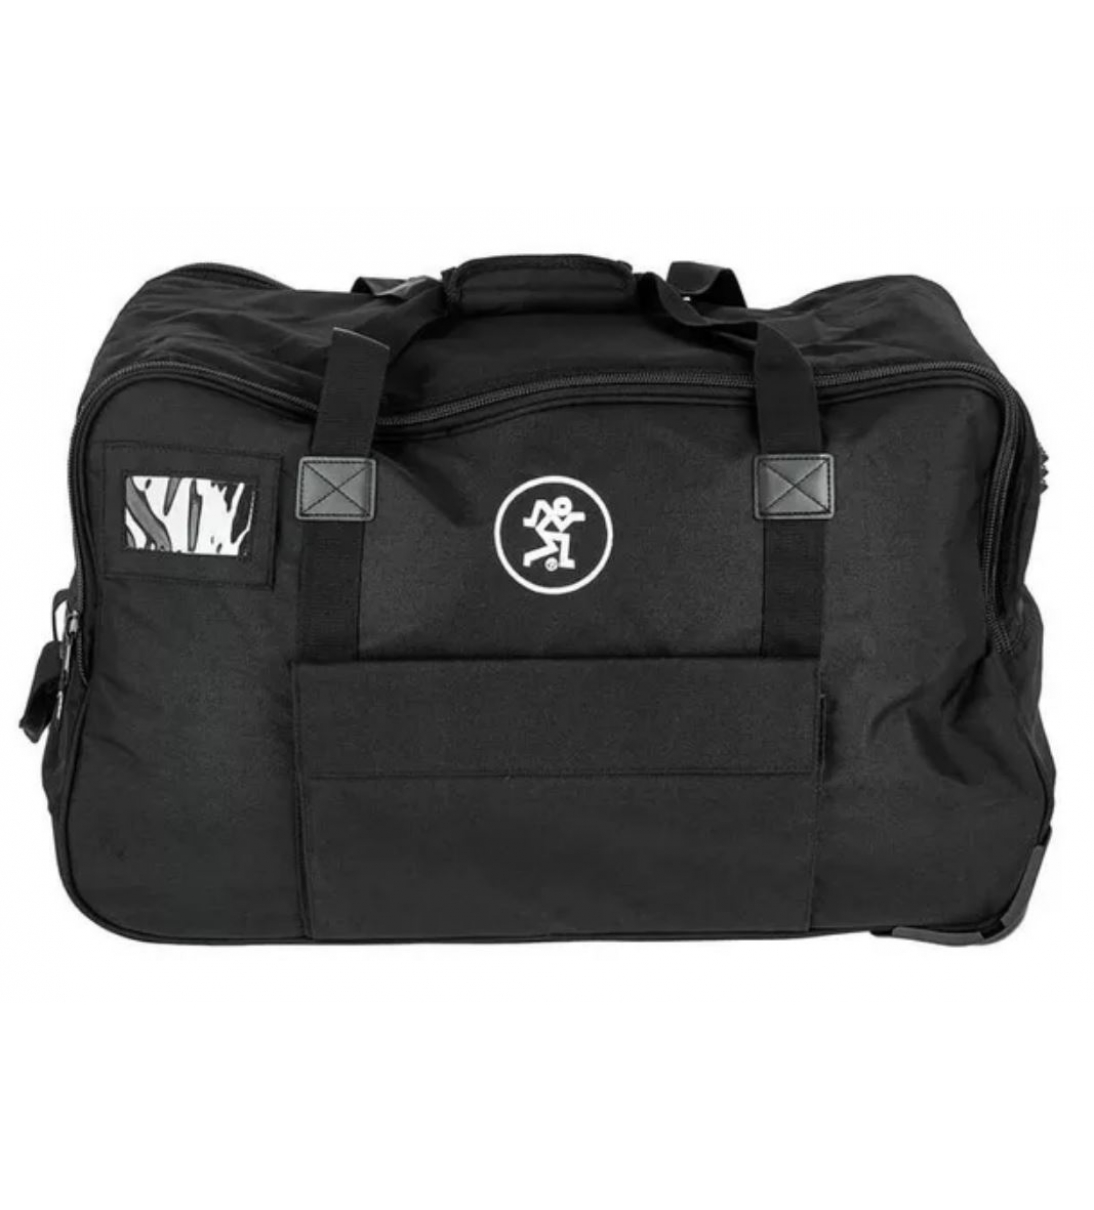 Thump 12A / BST / 212 / XT Rolling Bag